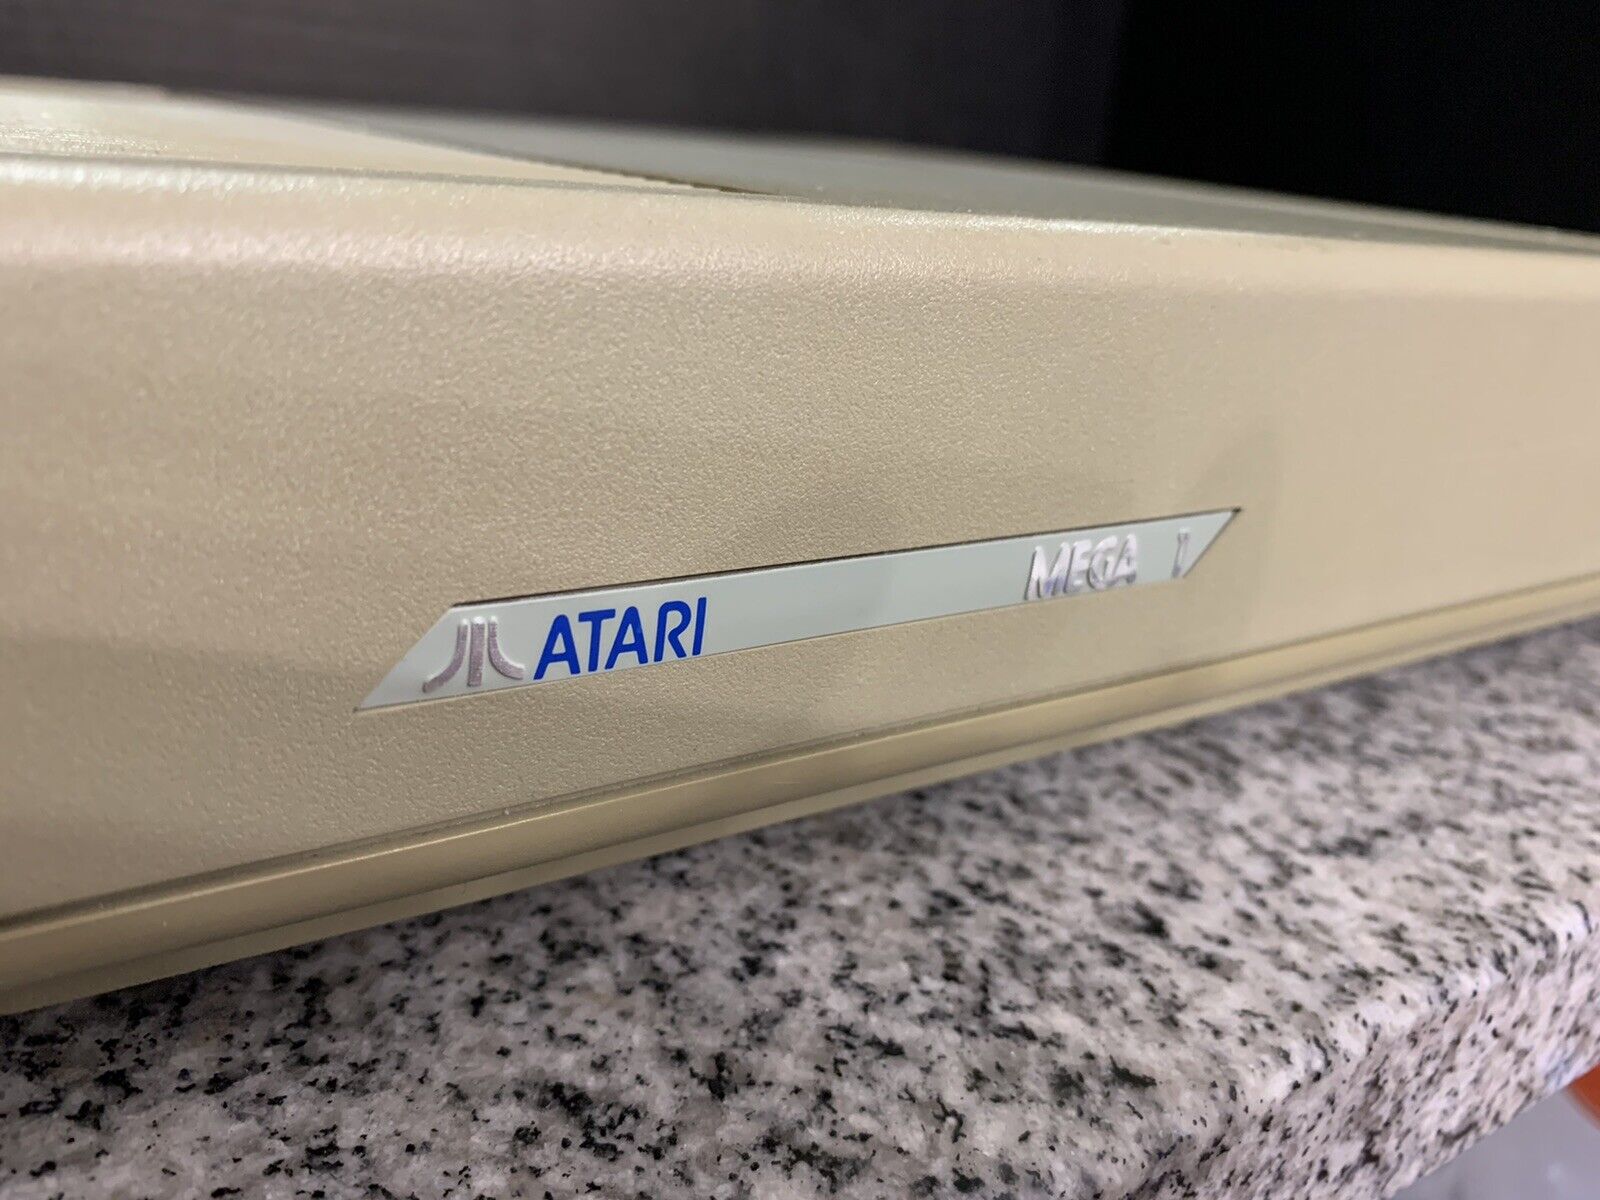 Vintage Atari Mega ST1 ST MegaST Computer Upgraded w/4MB RAM, New PSU, TOS 1.04